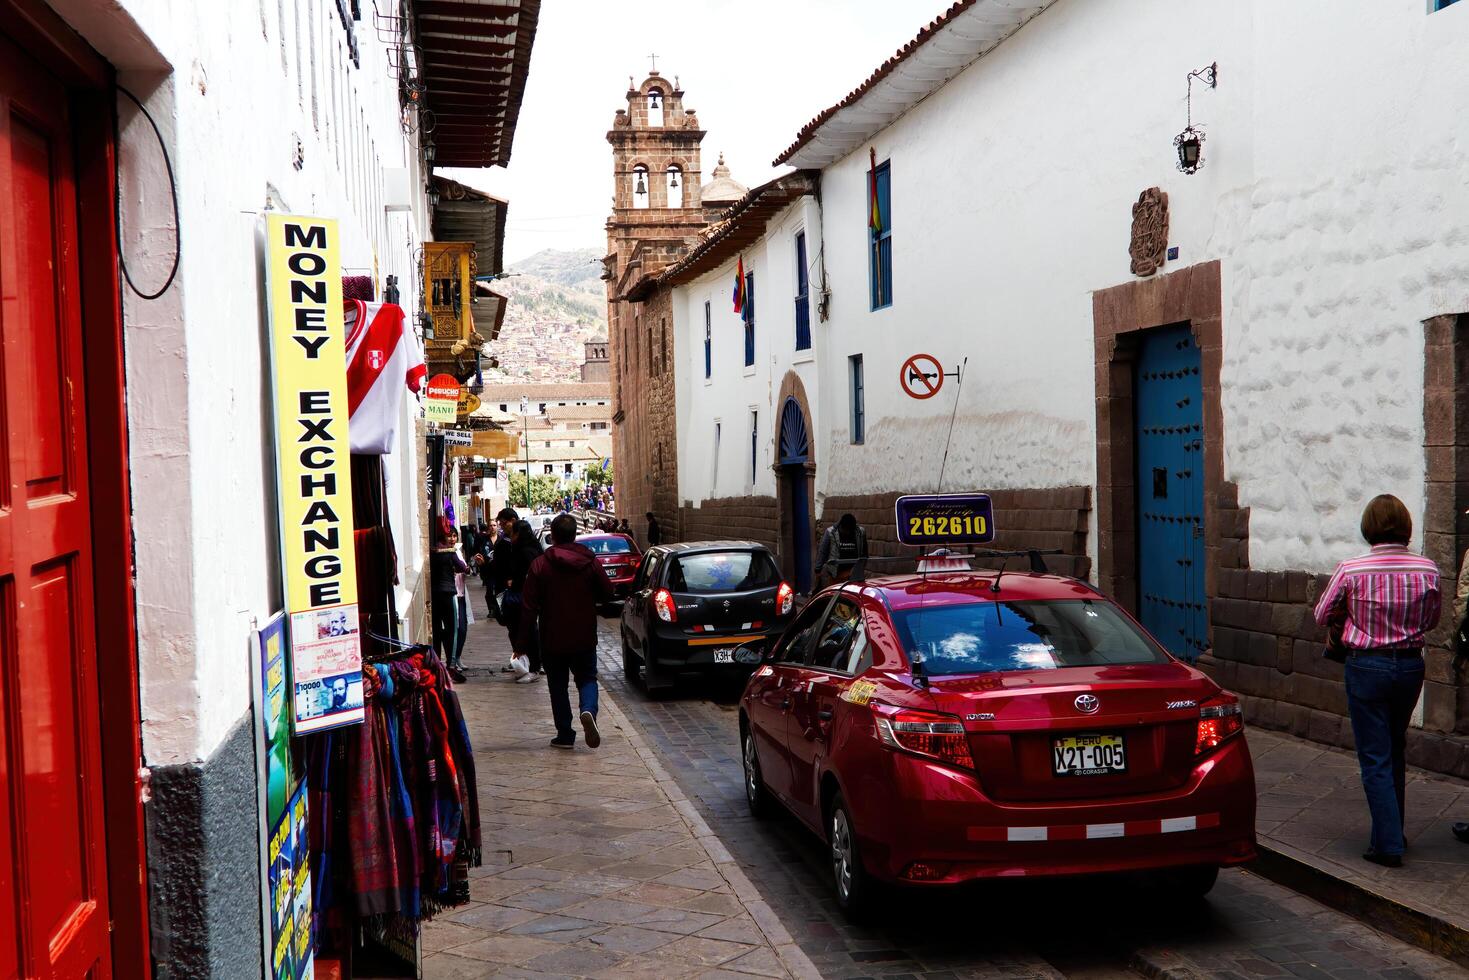 cusco, Peru, 2015 - limitar rua sul América com carros e pedestres foto